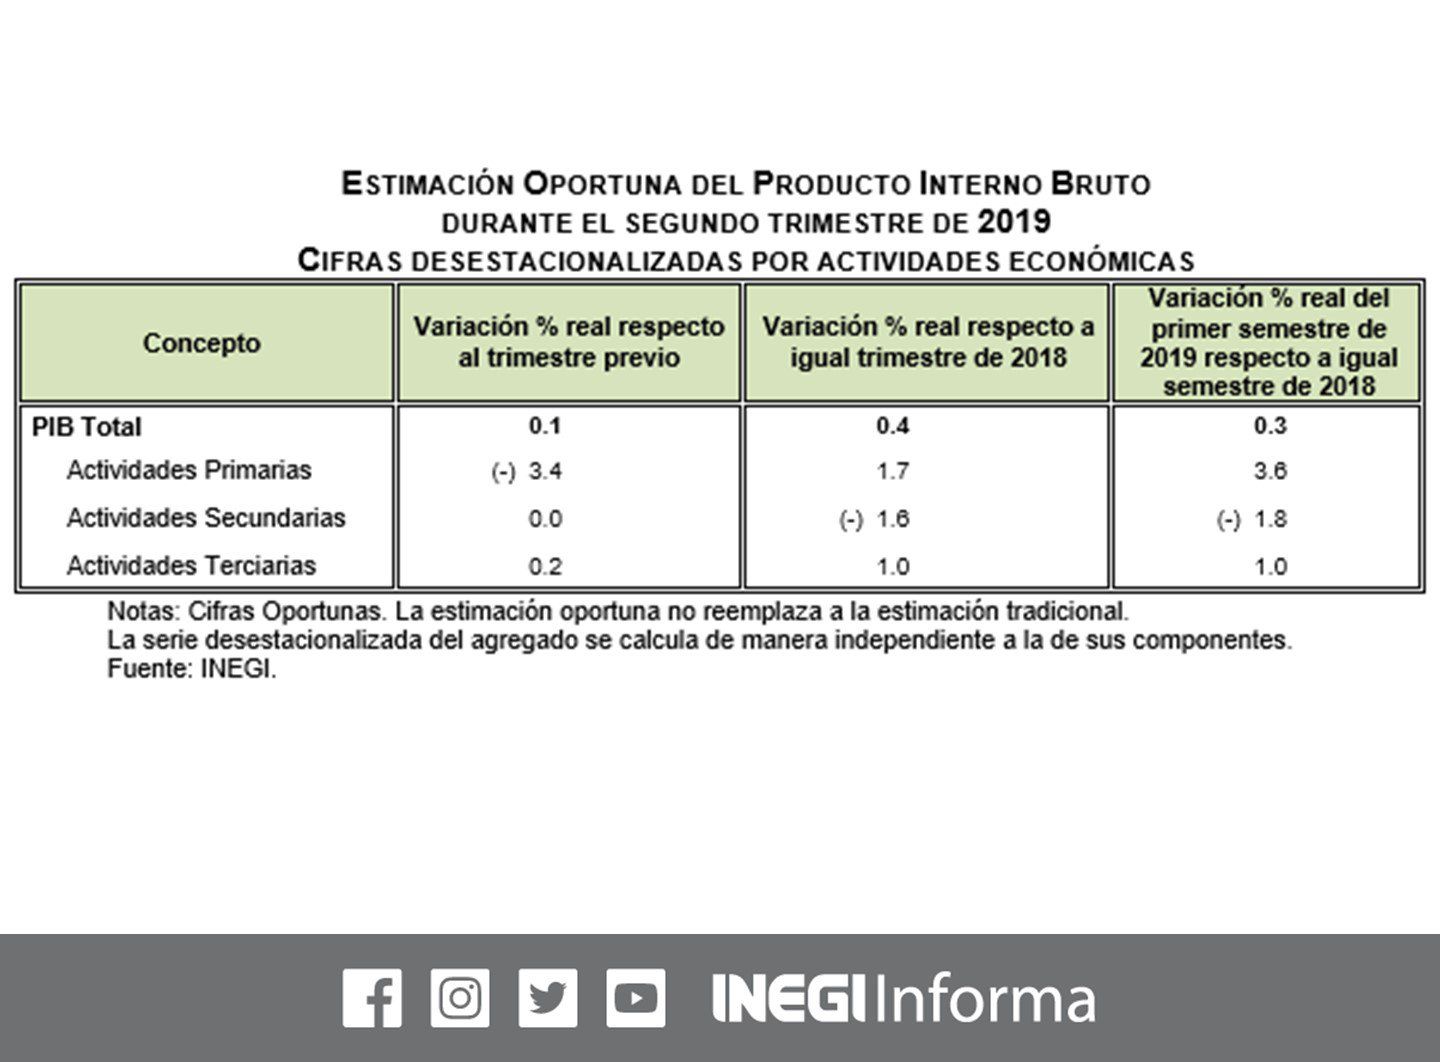 En el segundo trimestre de 2019, el Producto Interno Bruto #PIB aumentó 0.1% frente al trimestre previo e incrementó 0.4% en su referencia anual (cifras desest) (Foto: INEGI)